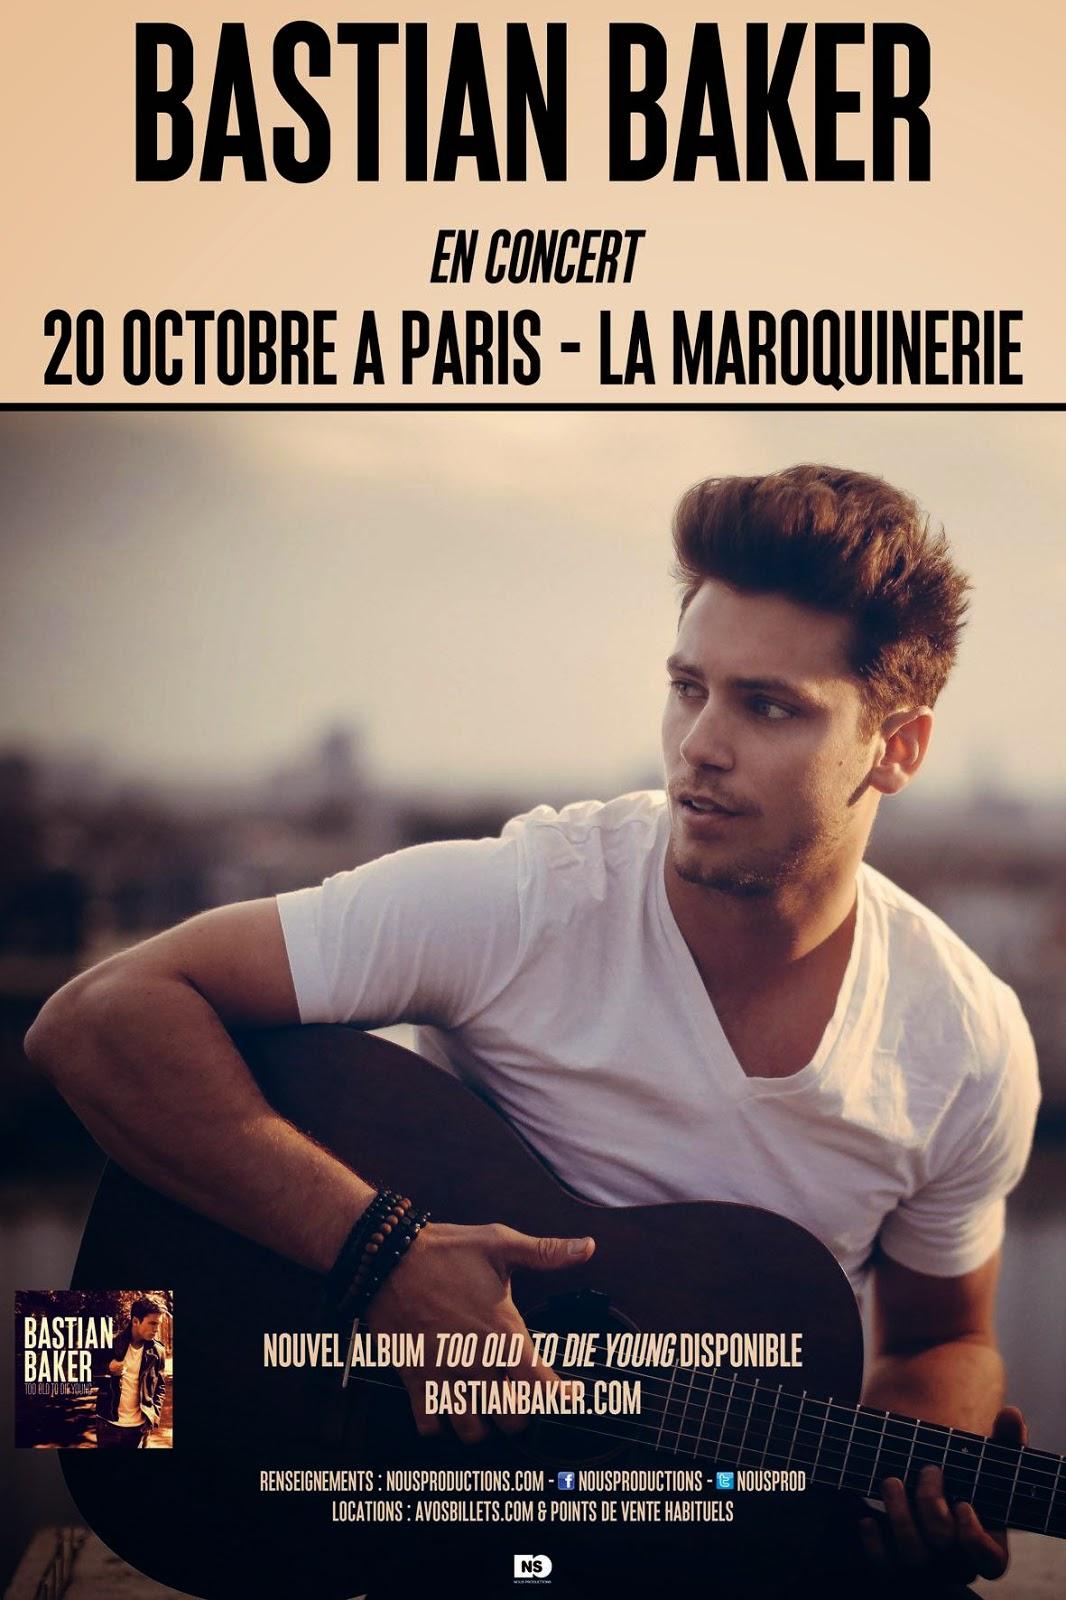 Bastian Baker en concert à Paris le 20 octobre !